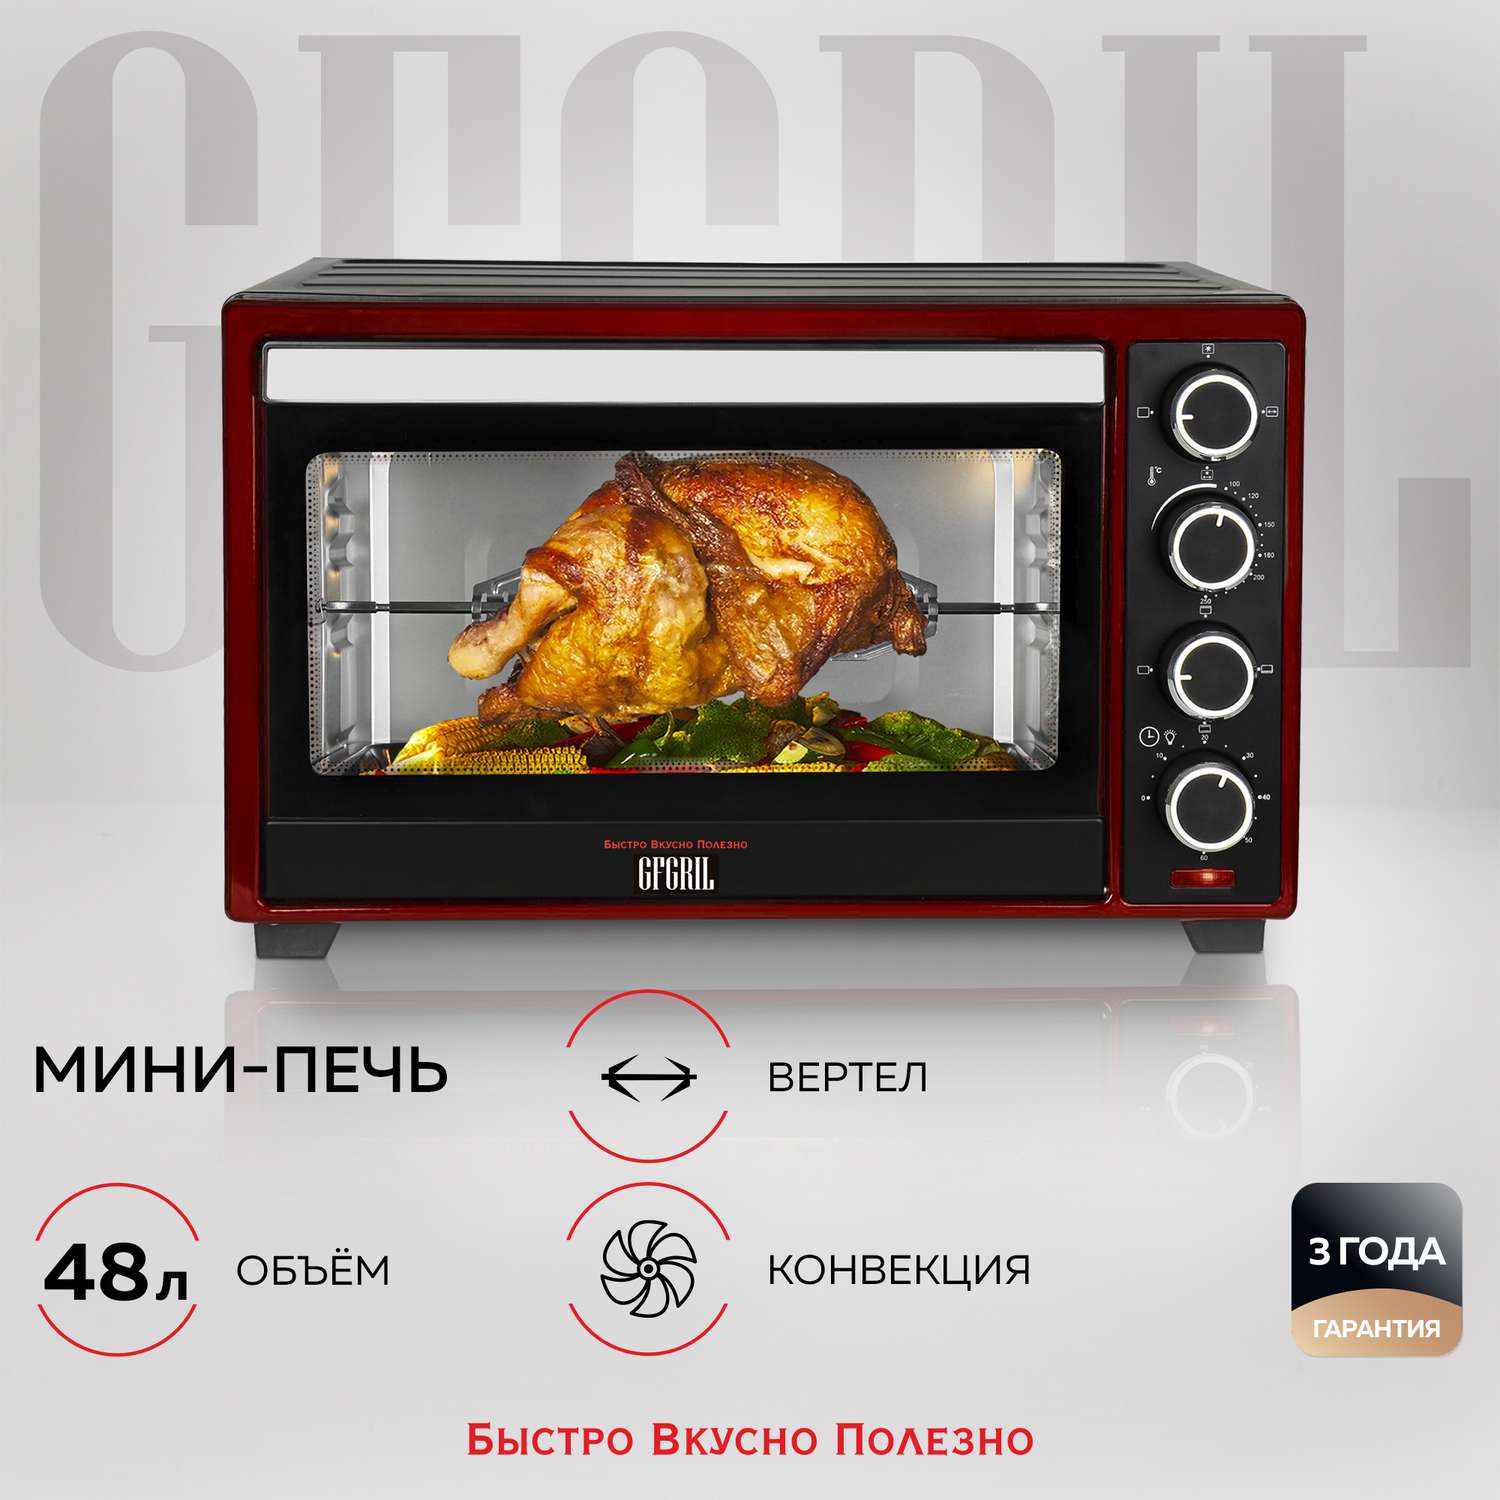 Мини-печь GFGRIL Gfo-48Br электрическая духовка 48 л цвет черный с красным конвекция вертел - фото 2